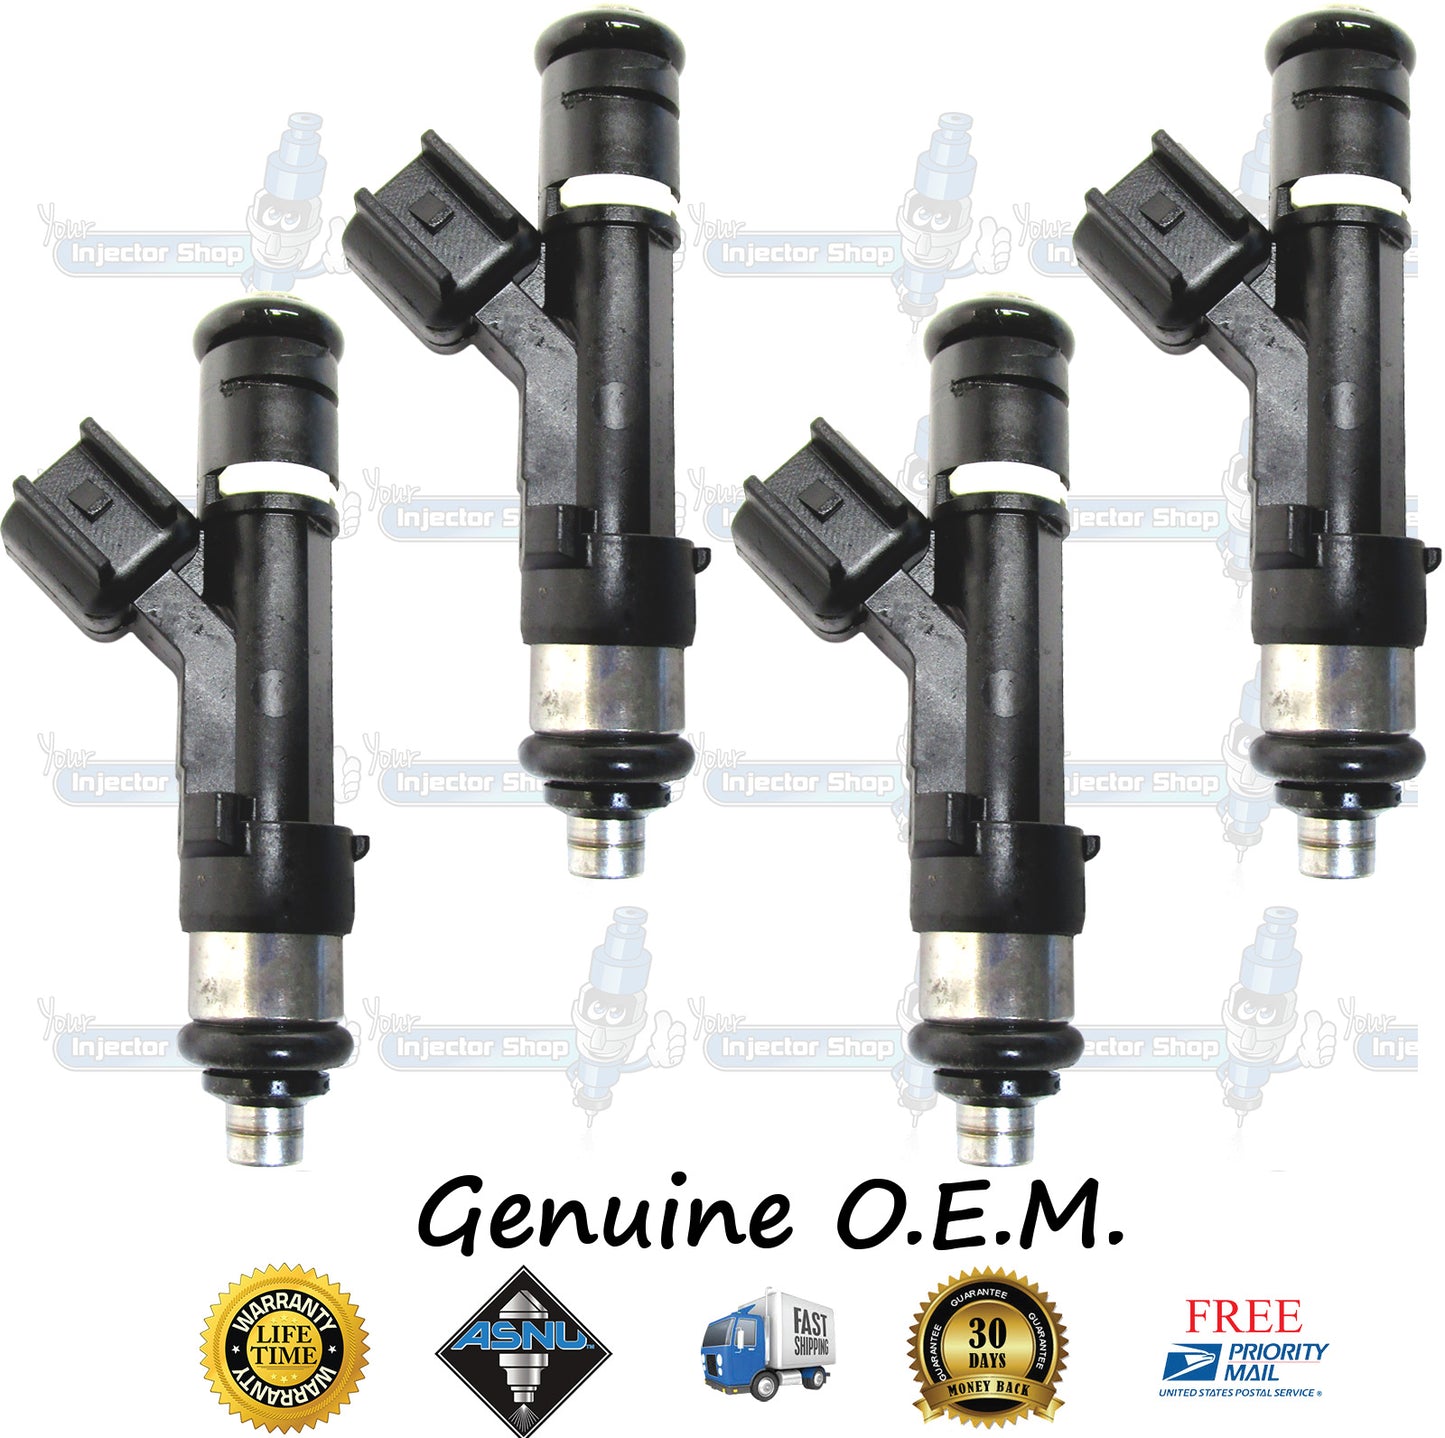 4x Genuine Ford Mazda Fuel Injectors 9E5G-AA Bosch 0280158162 2.5L DOHC Duratec V6